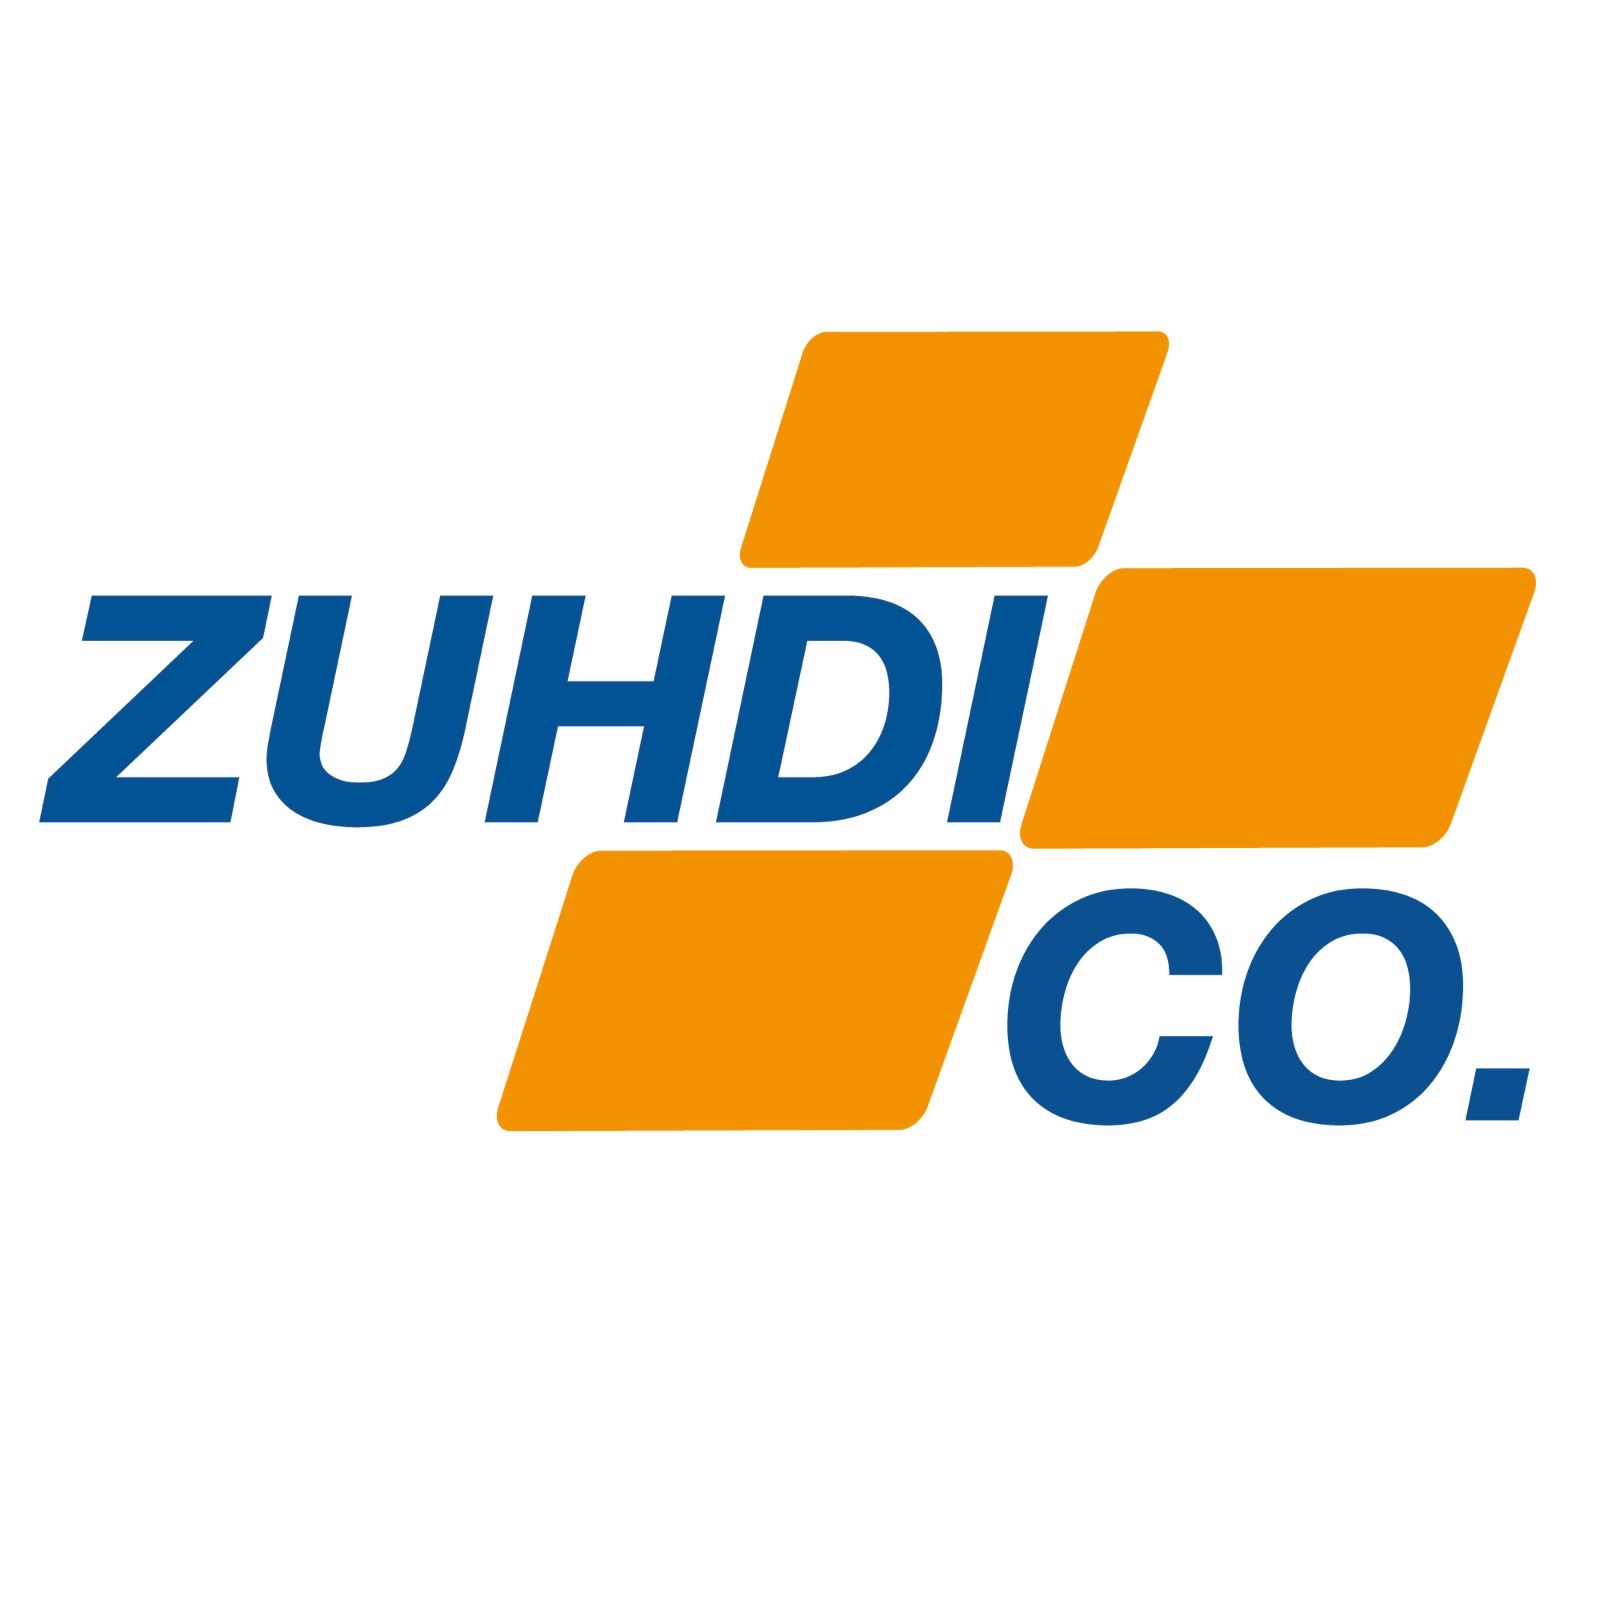 Zuhdi Co.